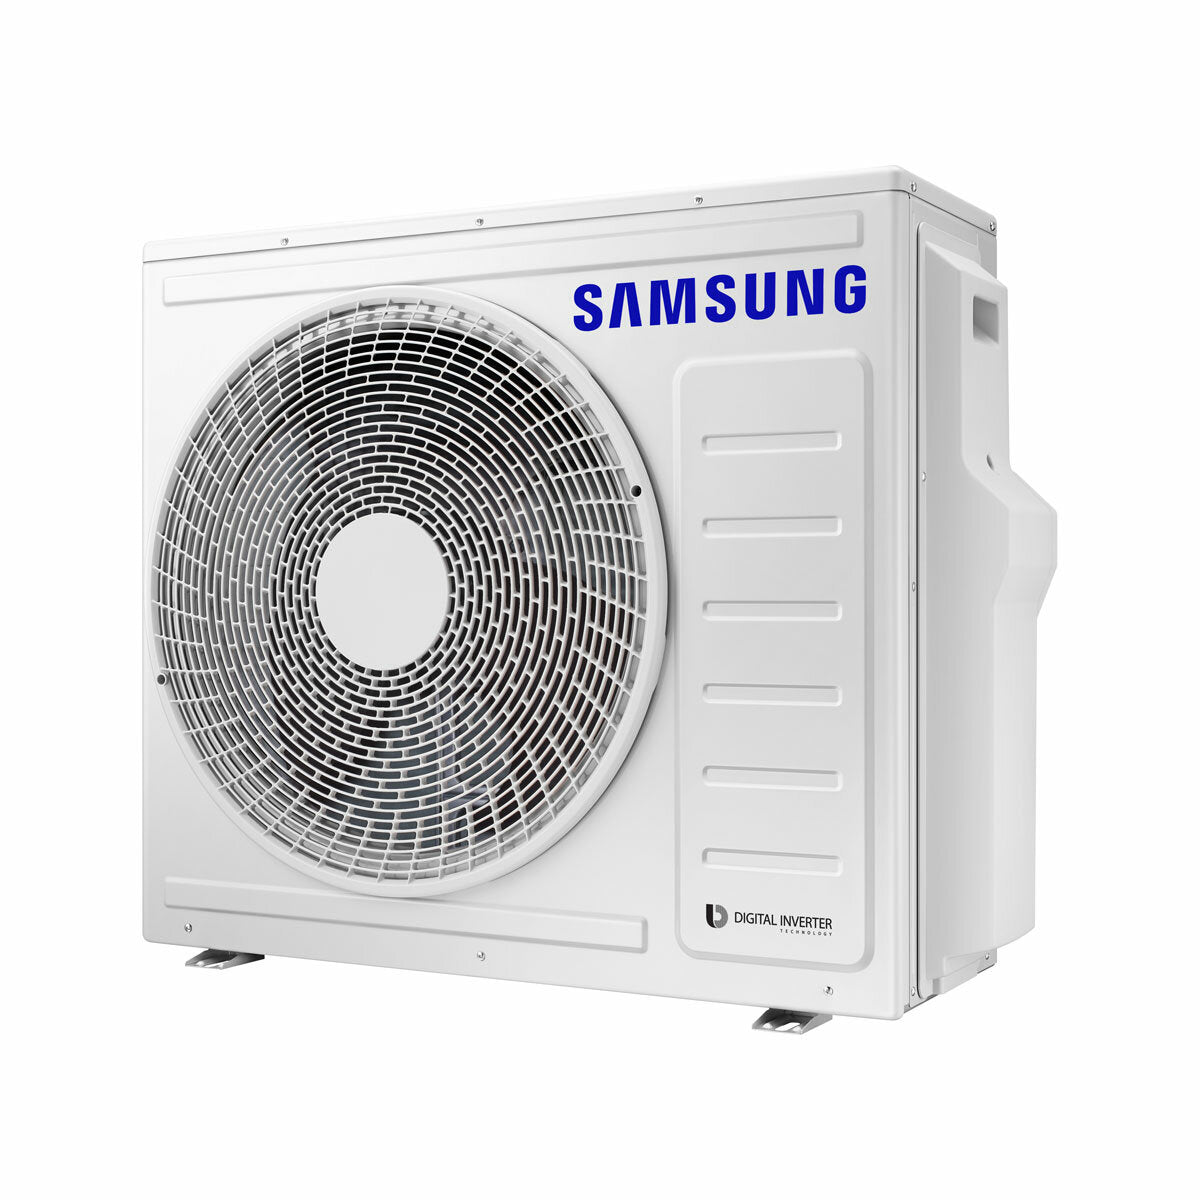 Samsung Climatiseur Windfree 4 voies split carré 7000 + 9000 + 12000 + 12000 BTU inverter A++ unité extérieure 8,0 kW